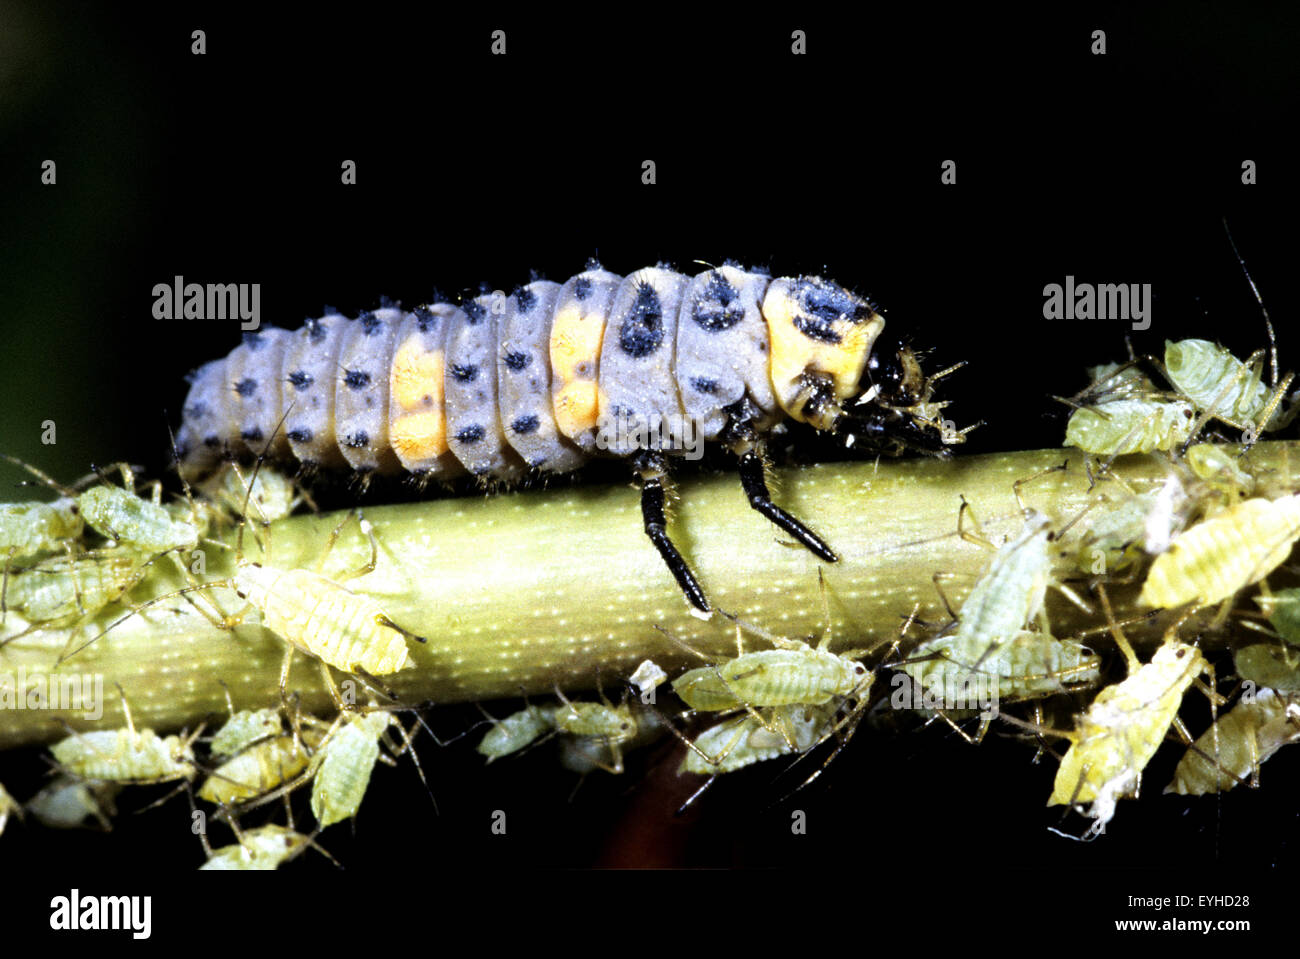 Marienkaeferlarve semptempunctata, Coccinella, beim Fressen von Blattlaeusen, Insekt Banque D'Images